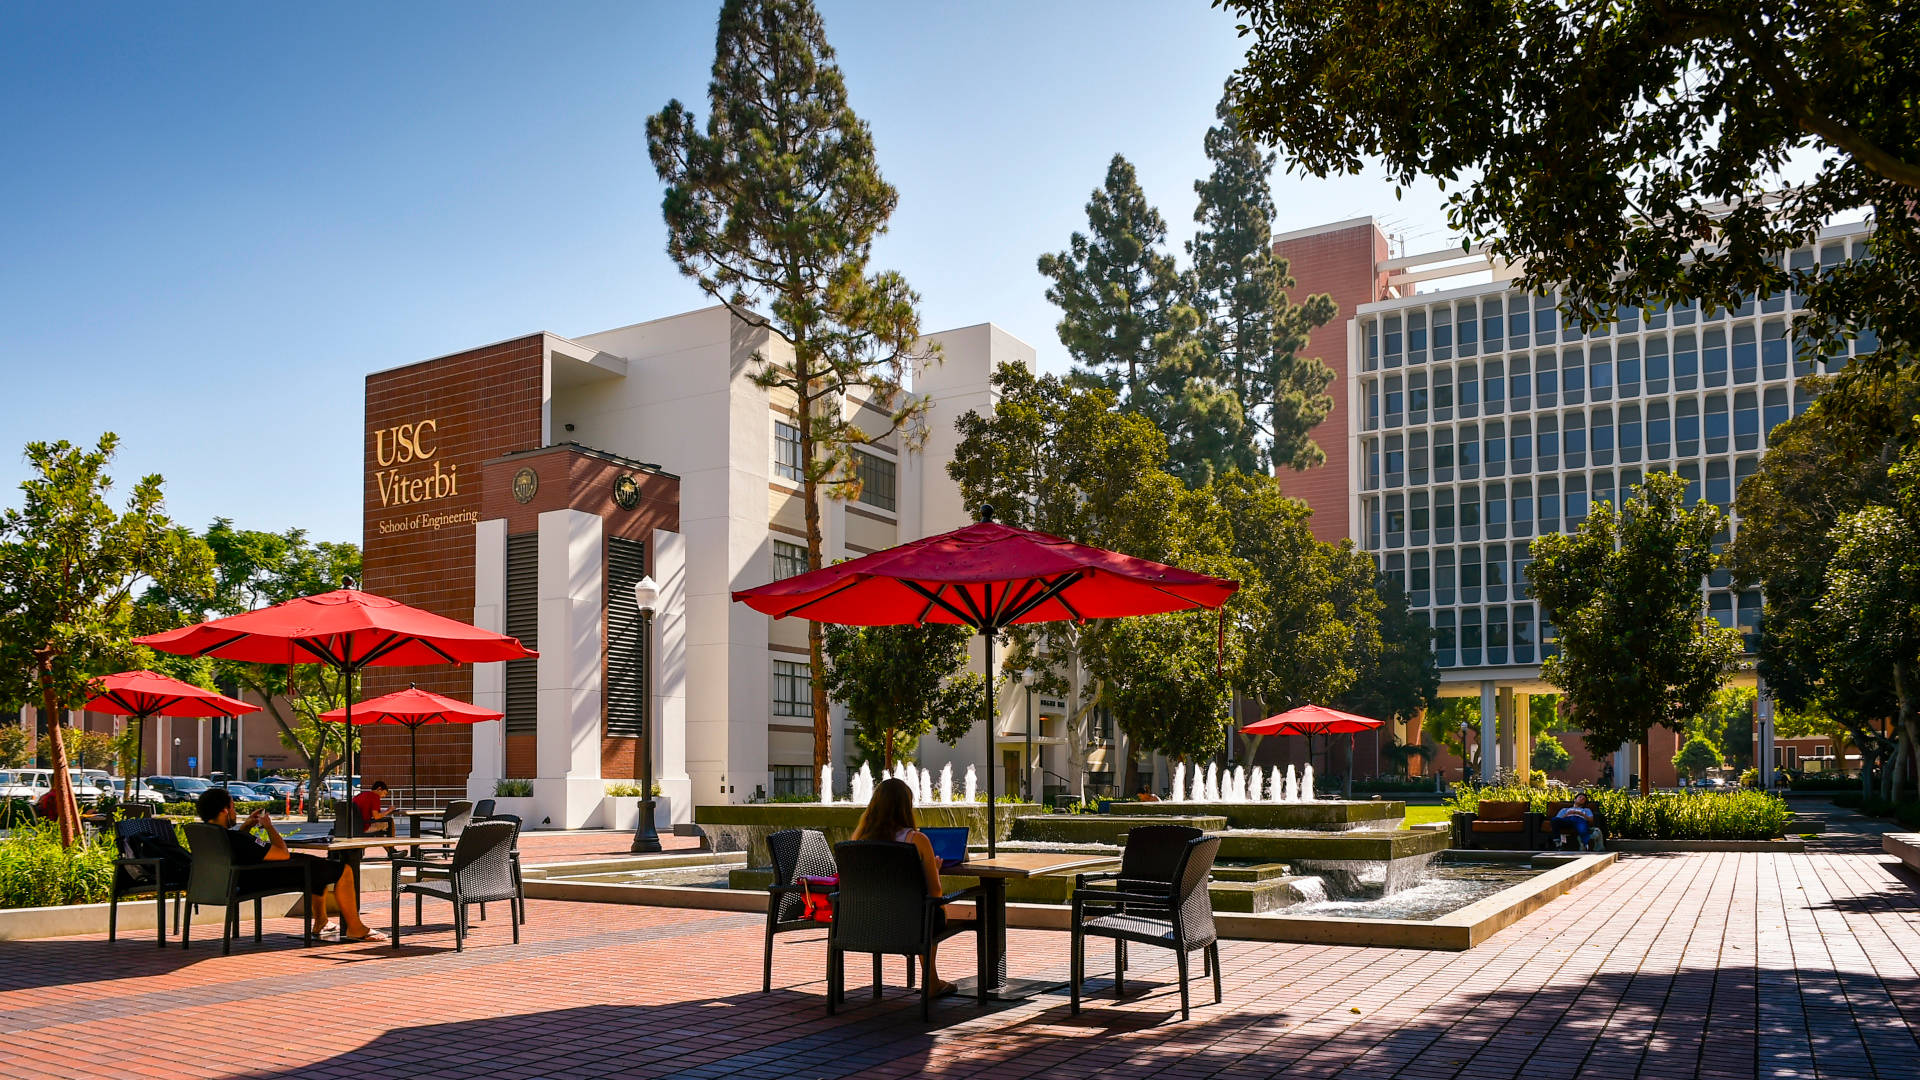 Edificioviterbi De La Universidad De Southern California Fondo de pantalla